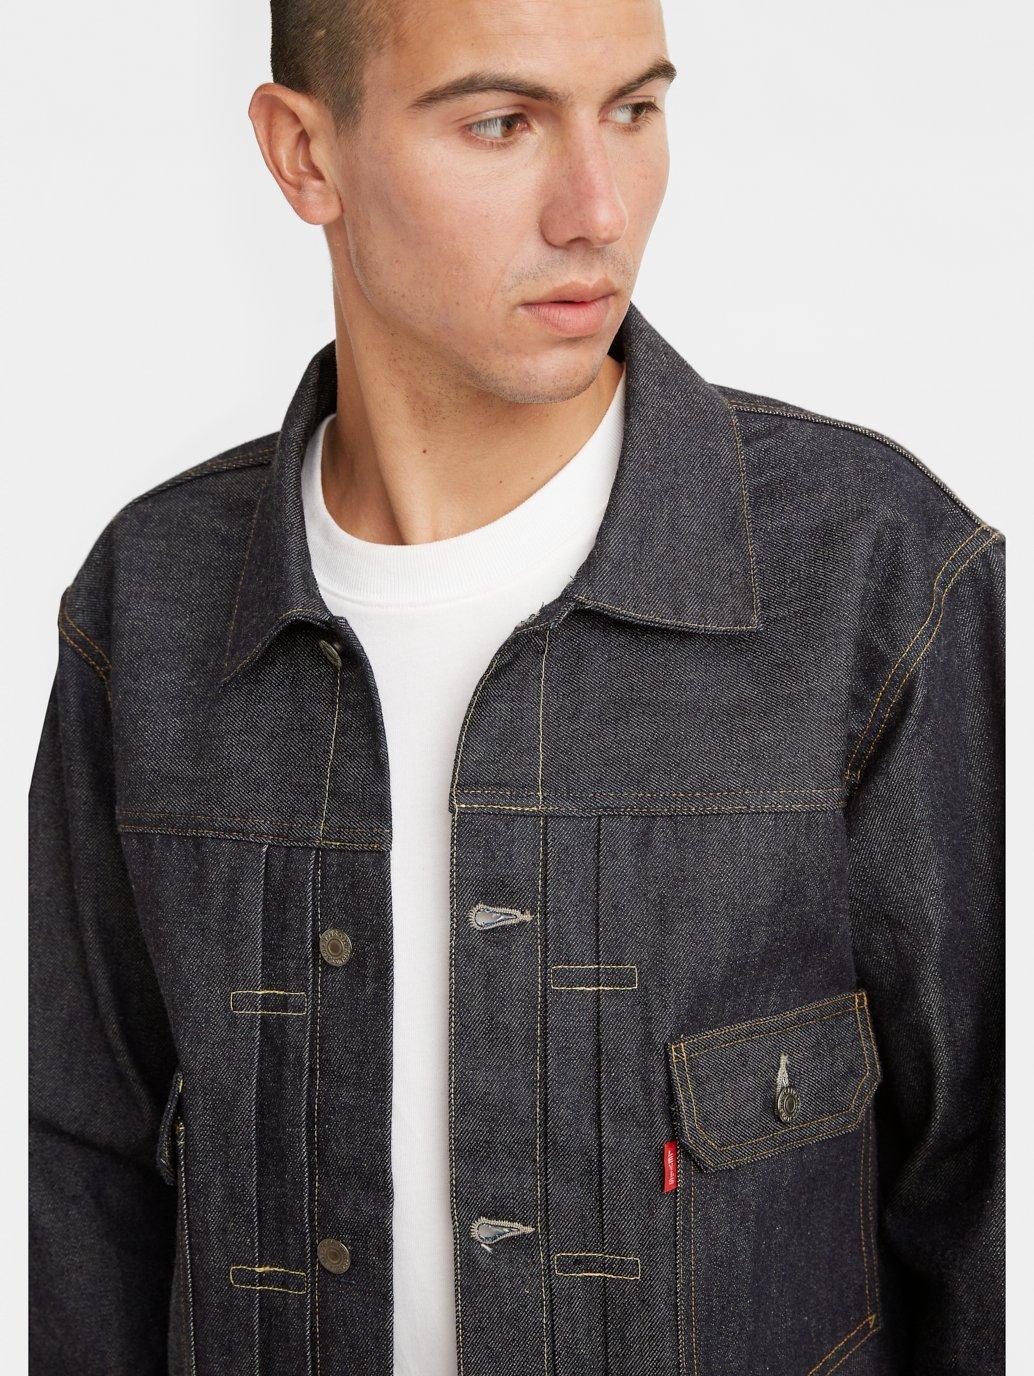 Levi’s Vintage Clothing 1936 Type I Denim Jacket